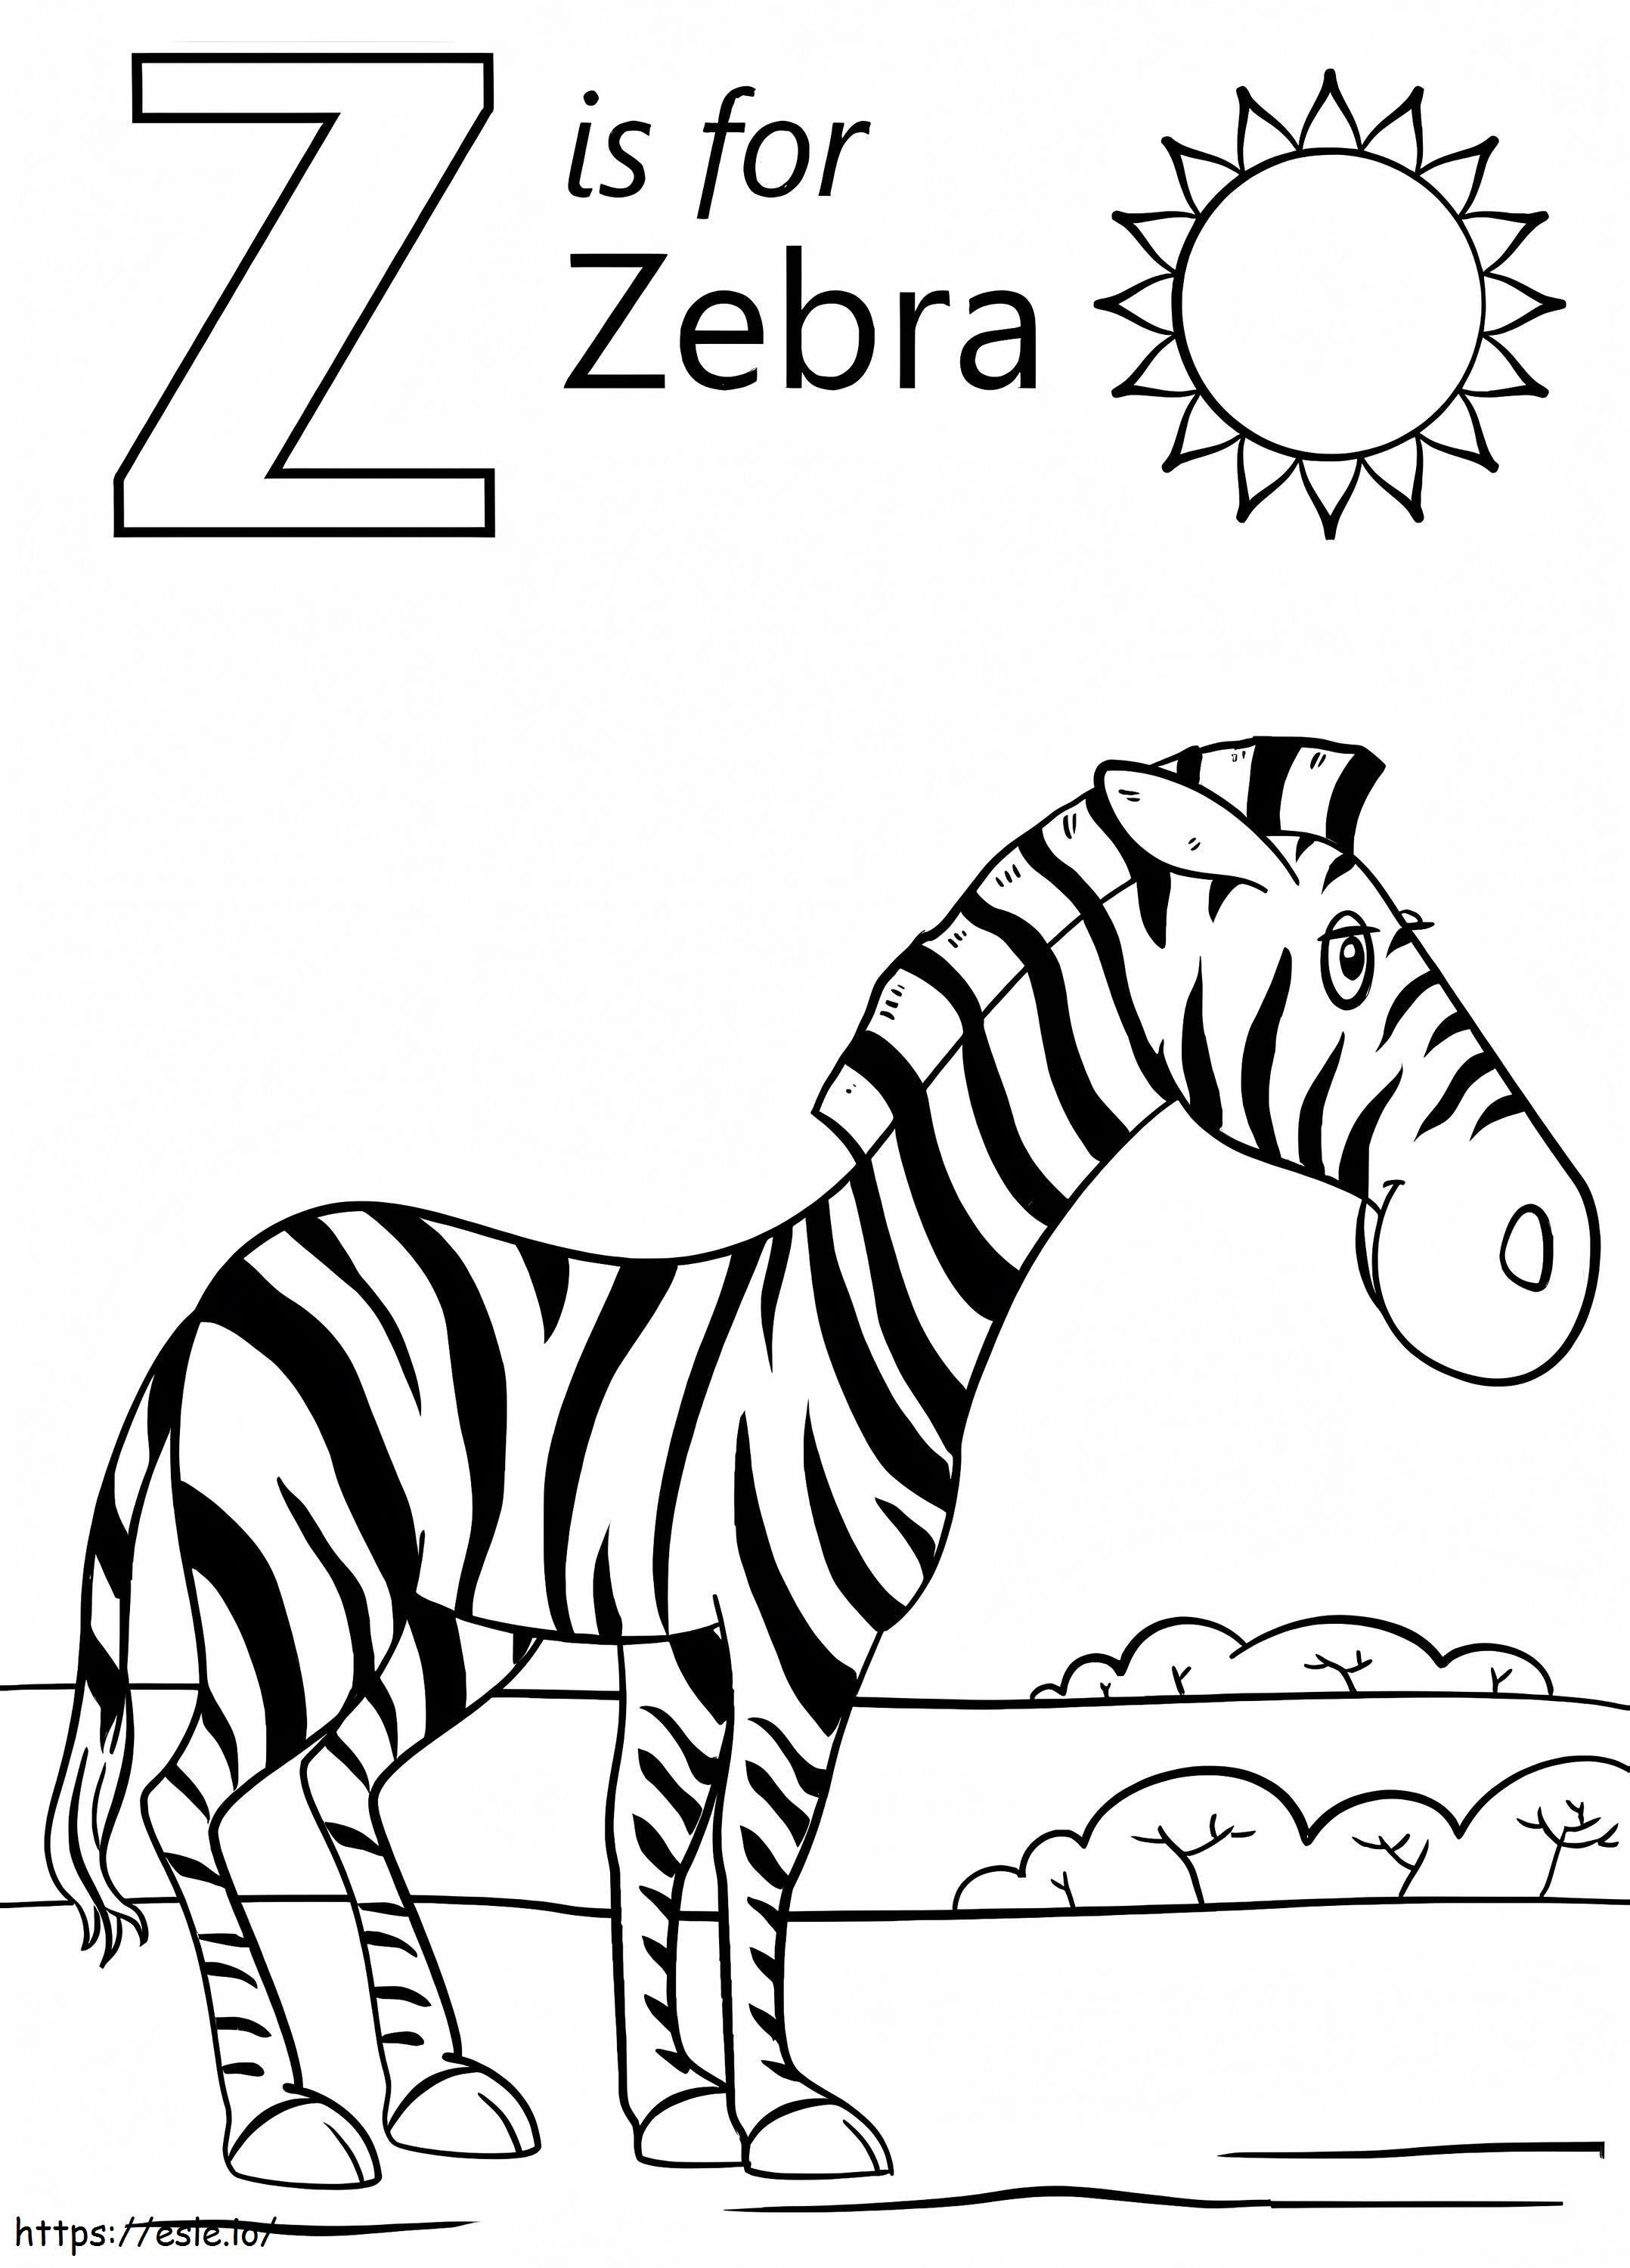 Zebra Letra Z Com Sol para colorir